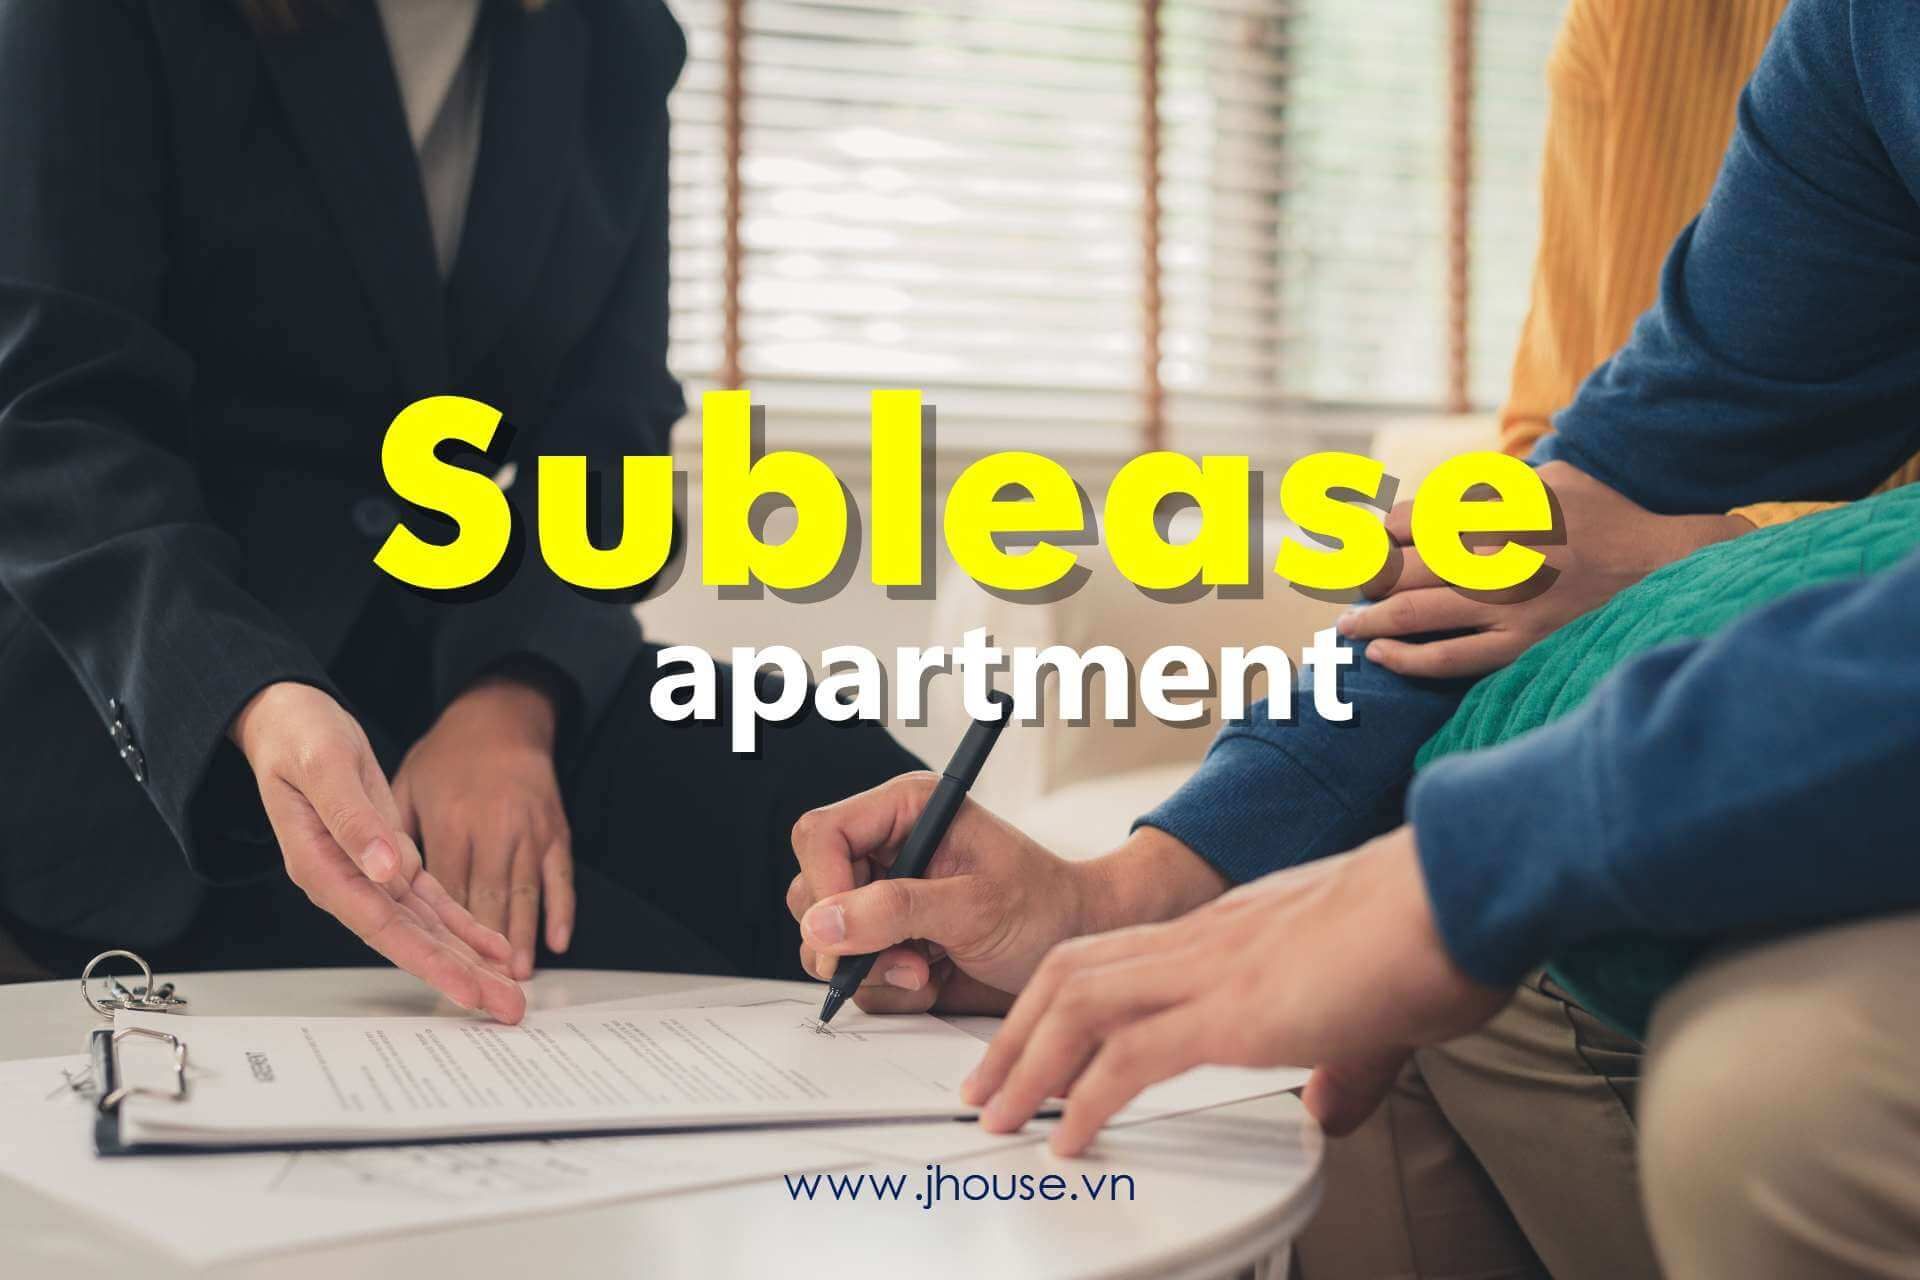 Sublease apartment